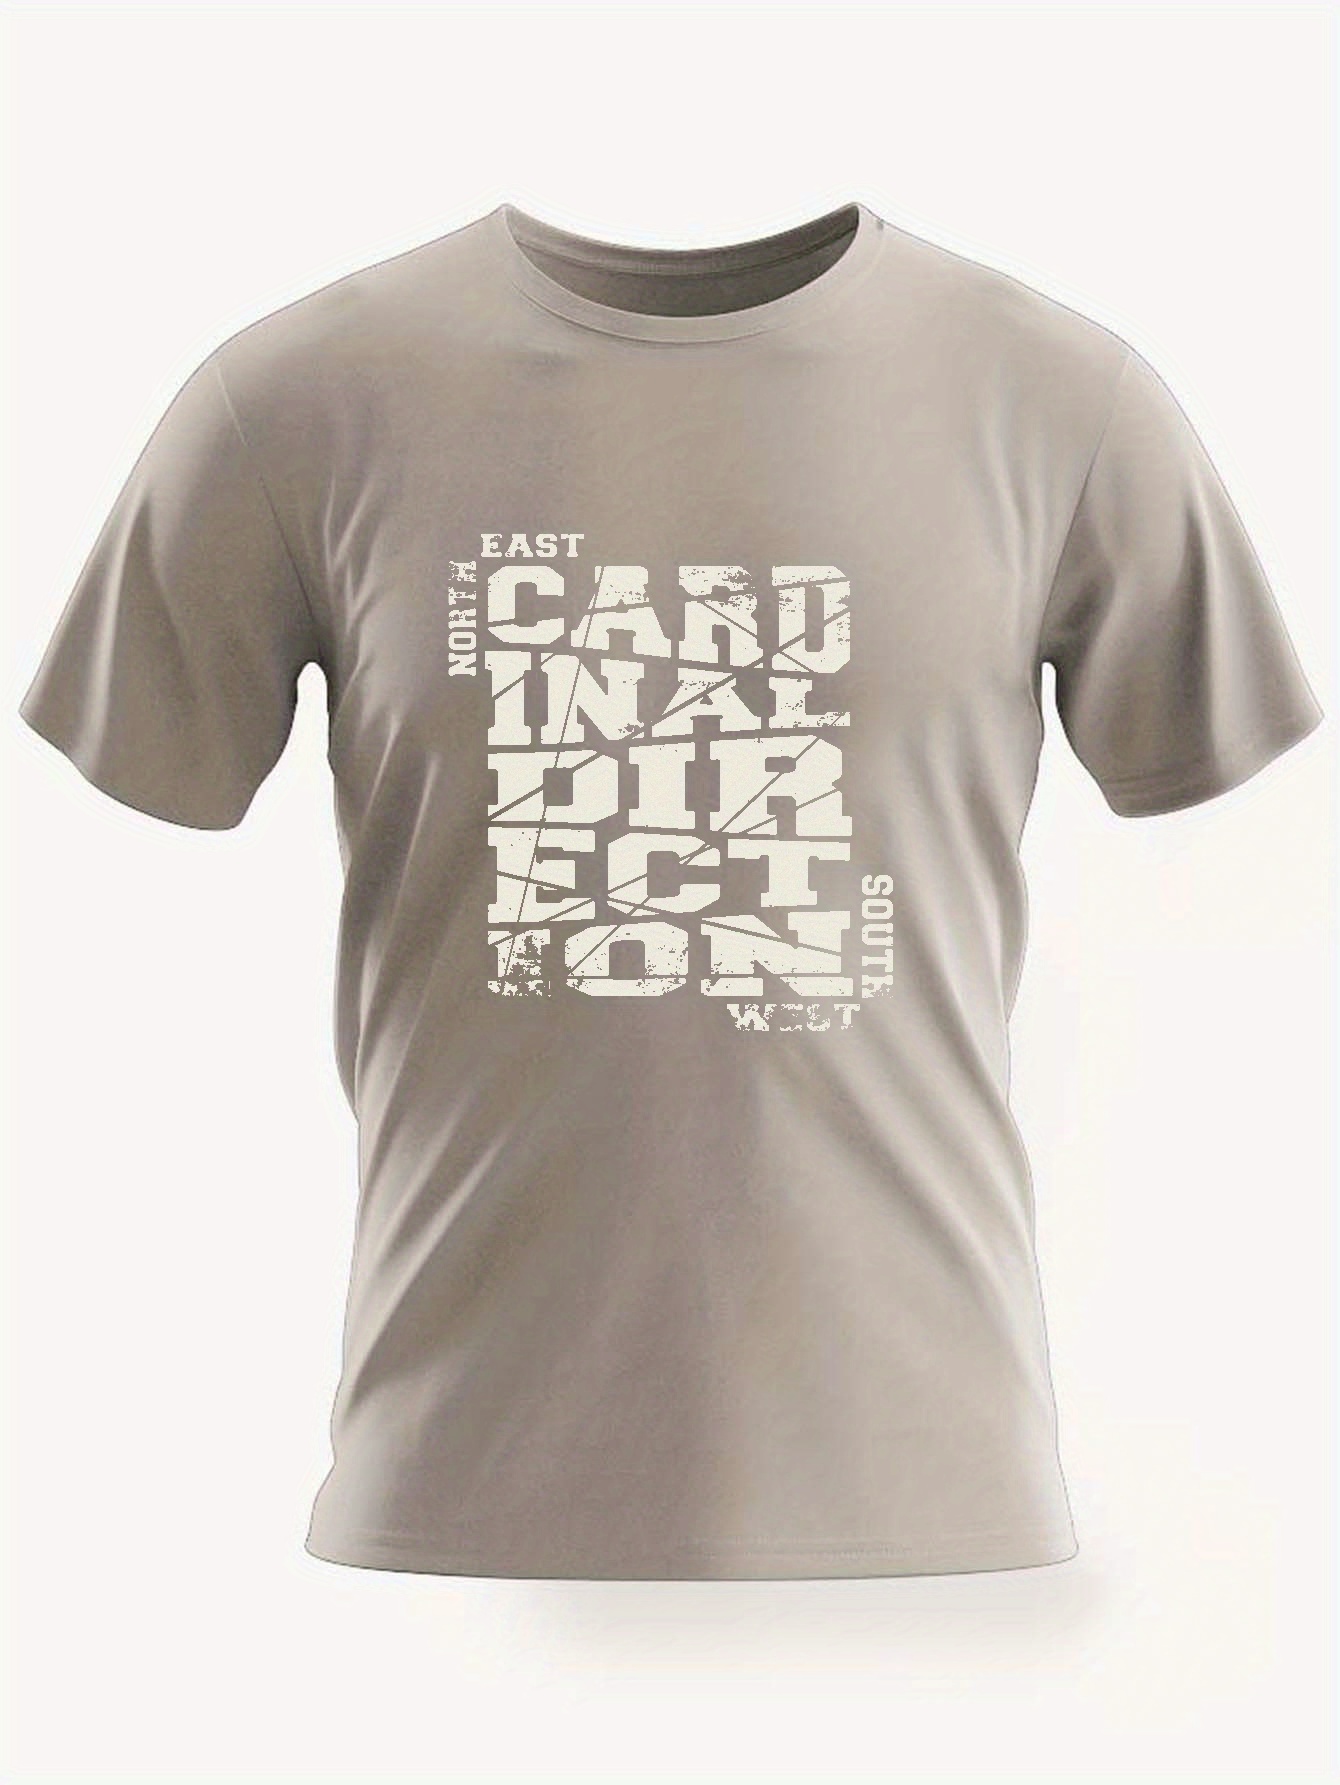 Bass Print T Shirt Tees Men Casual Short Sleeve T shirt - Temu